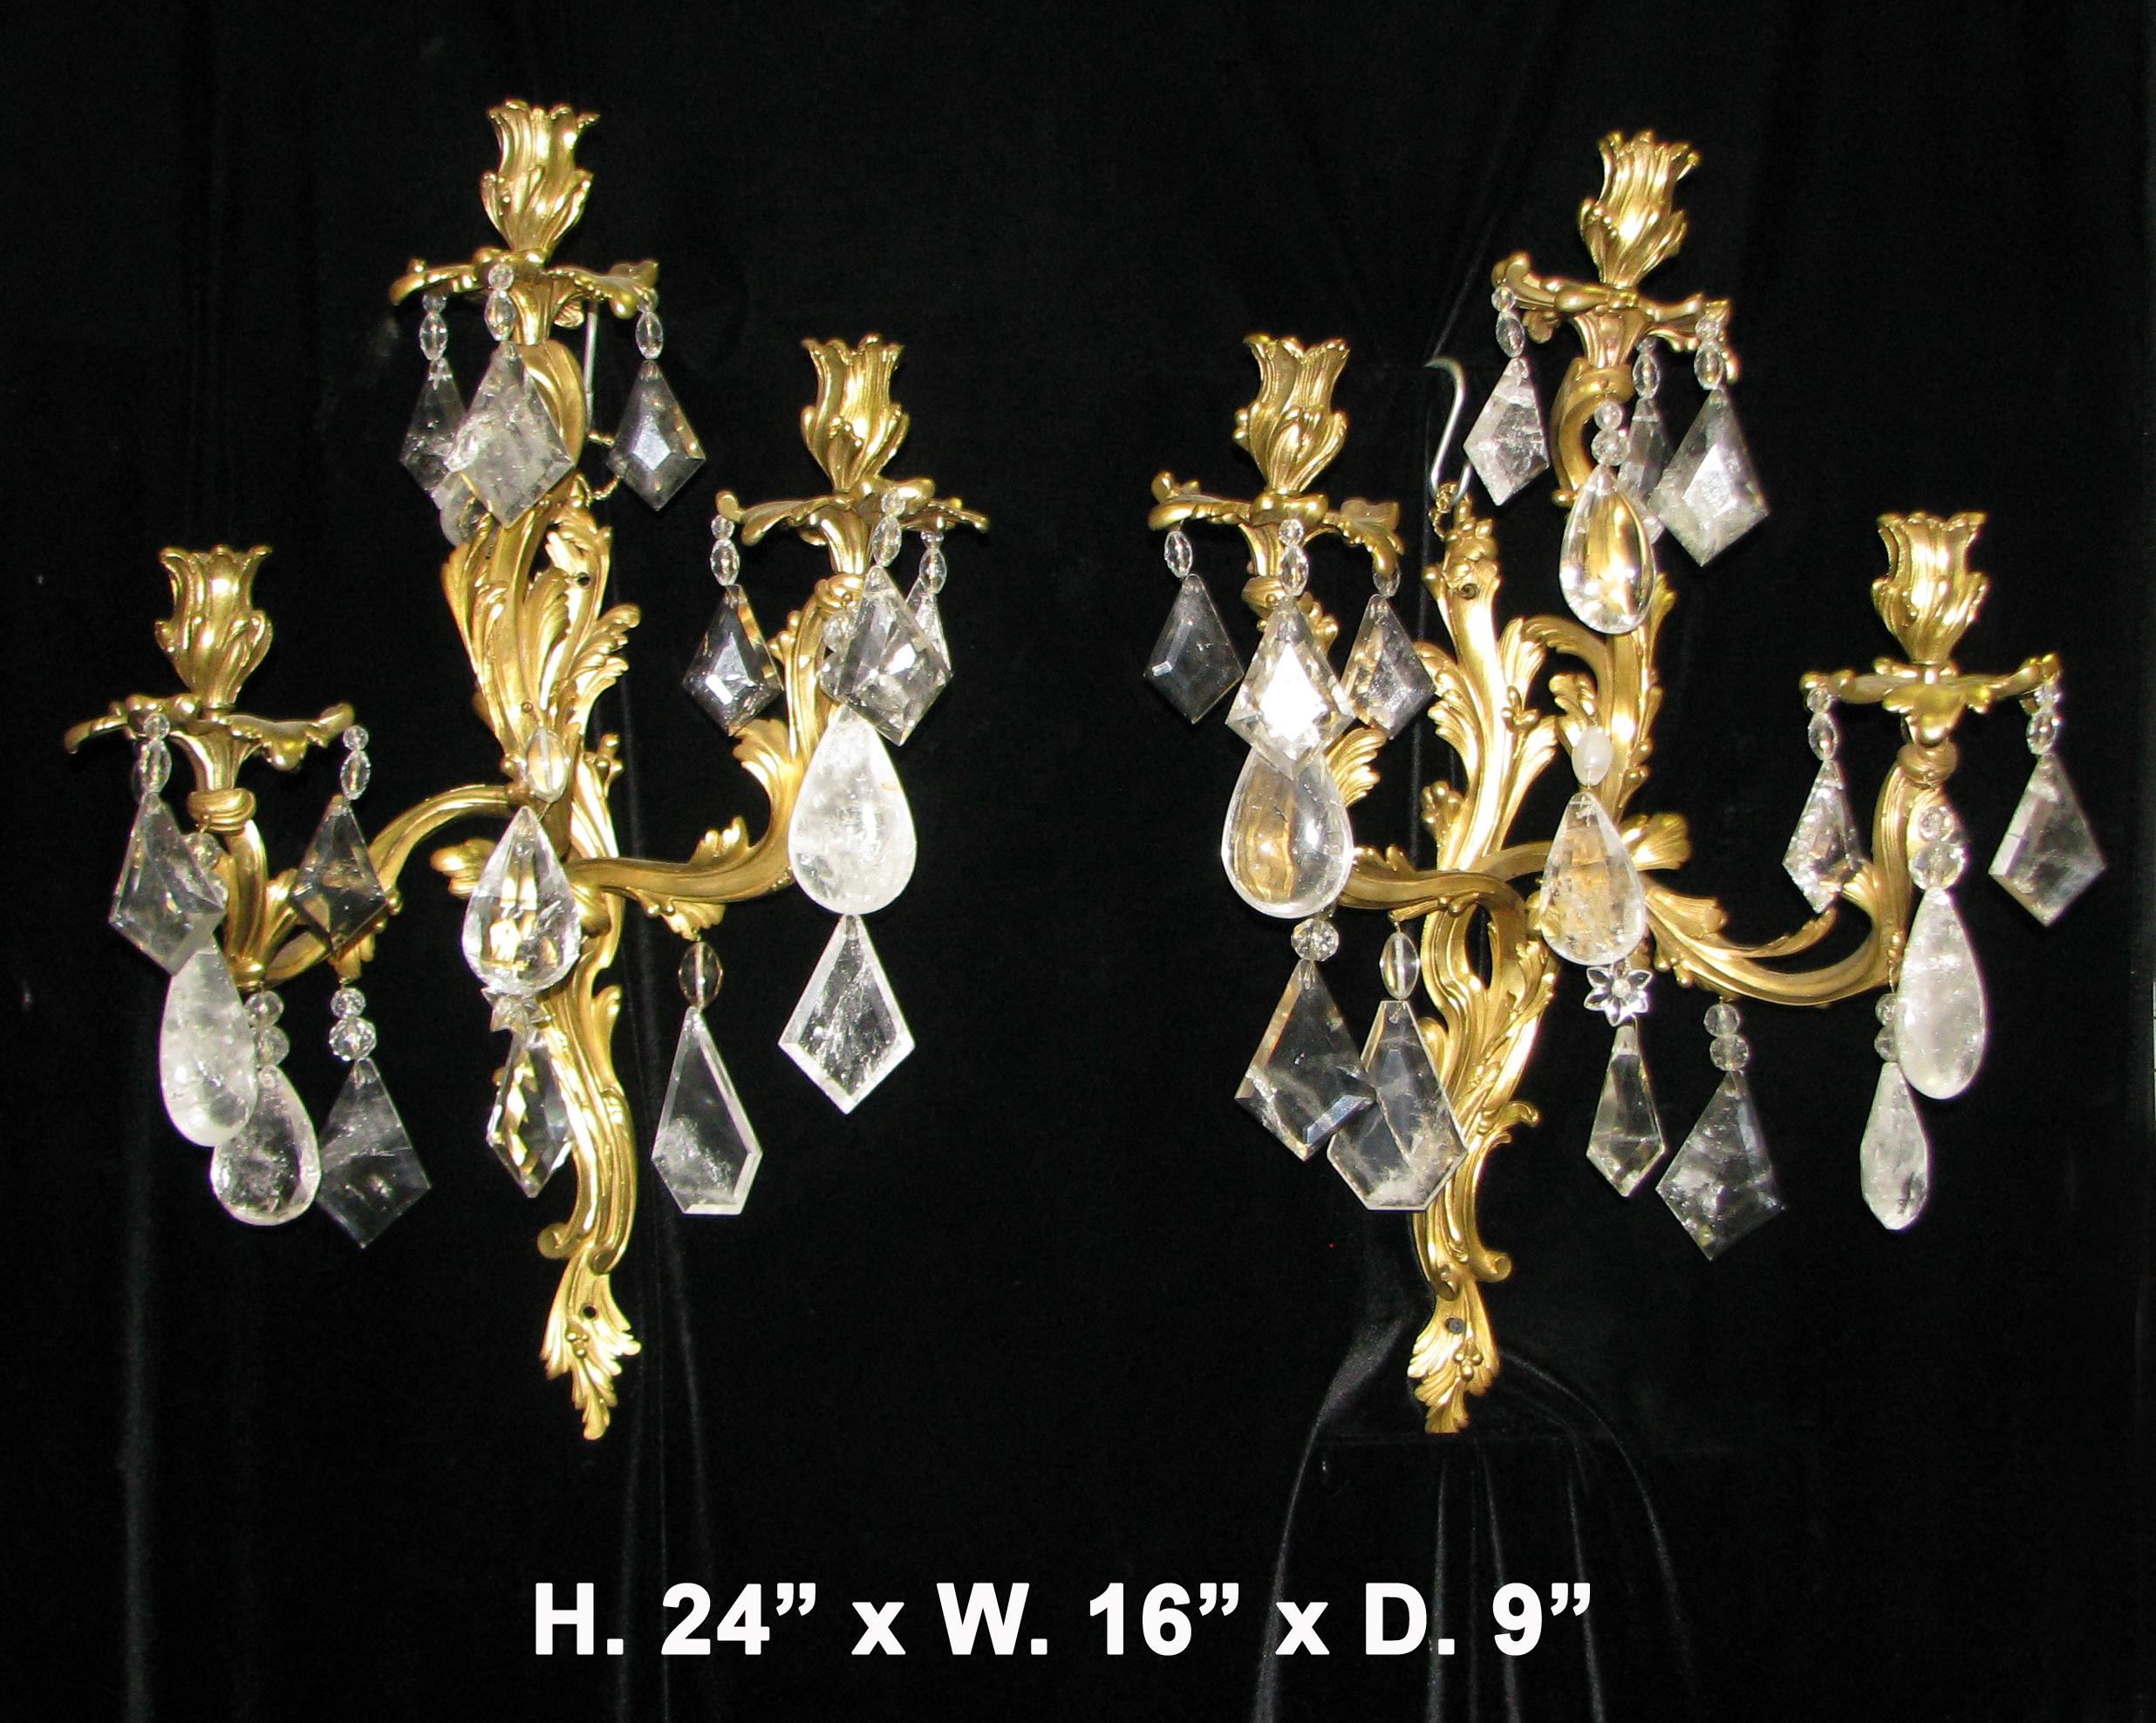 Paire d'appliques à trois lumières de style Louis XV français du 19e siècle, en bronze doré et cristal de roche, avec motif d'acanthe.
Une attention méticuleuse a été accordée à chaque détail.
Mesures : H. 24